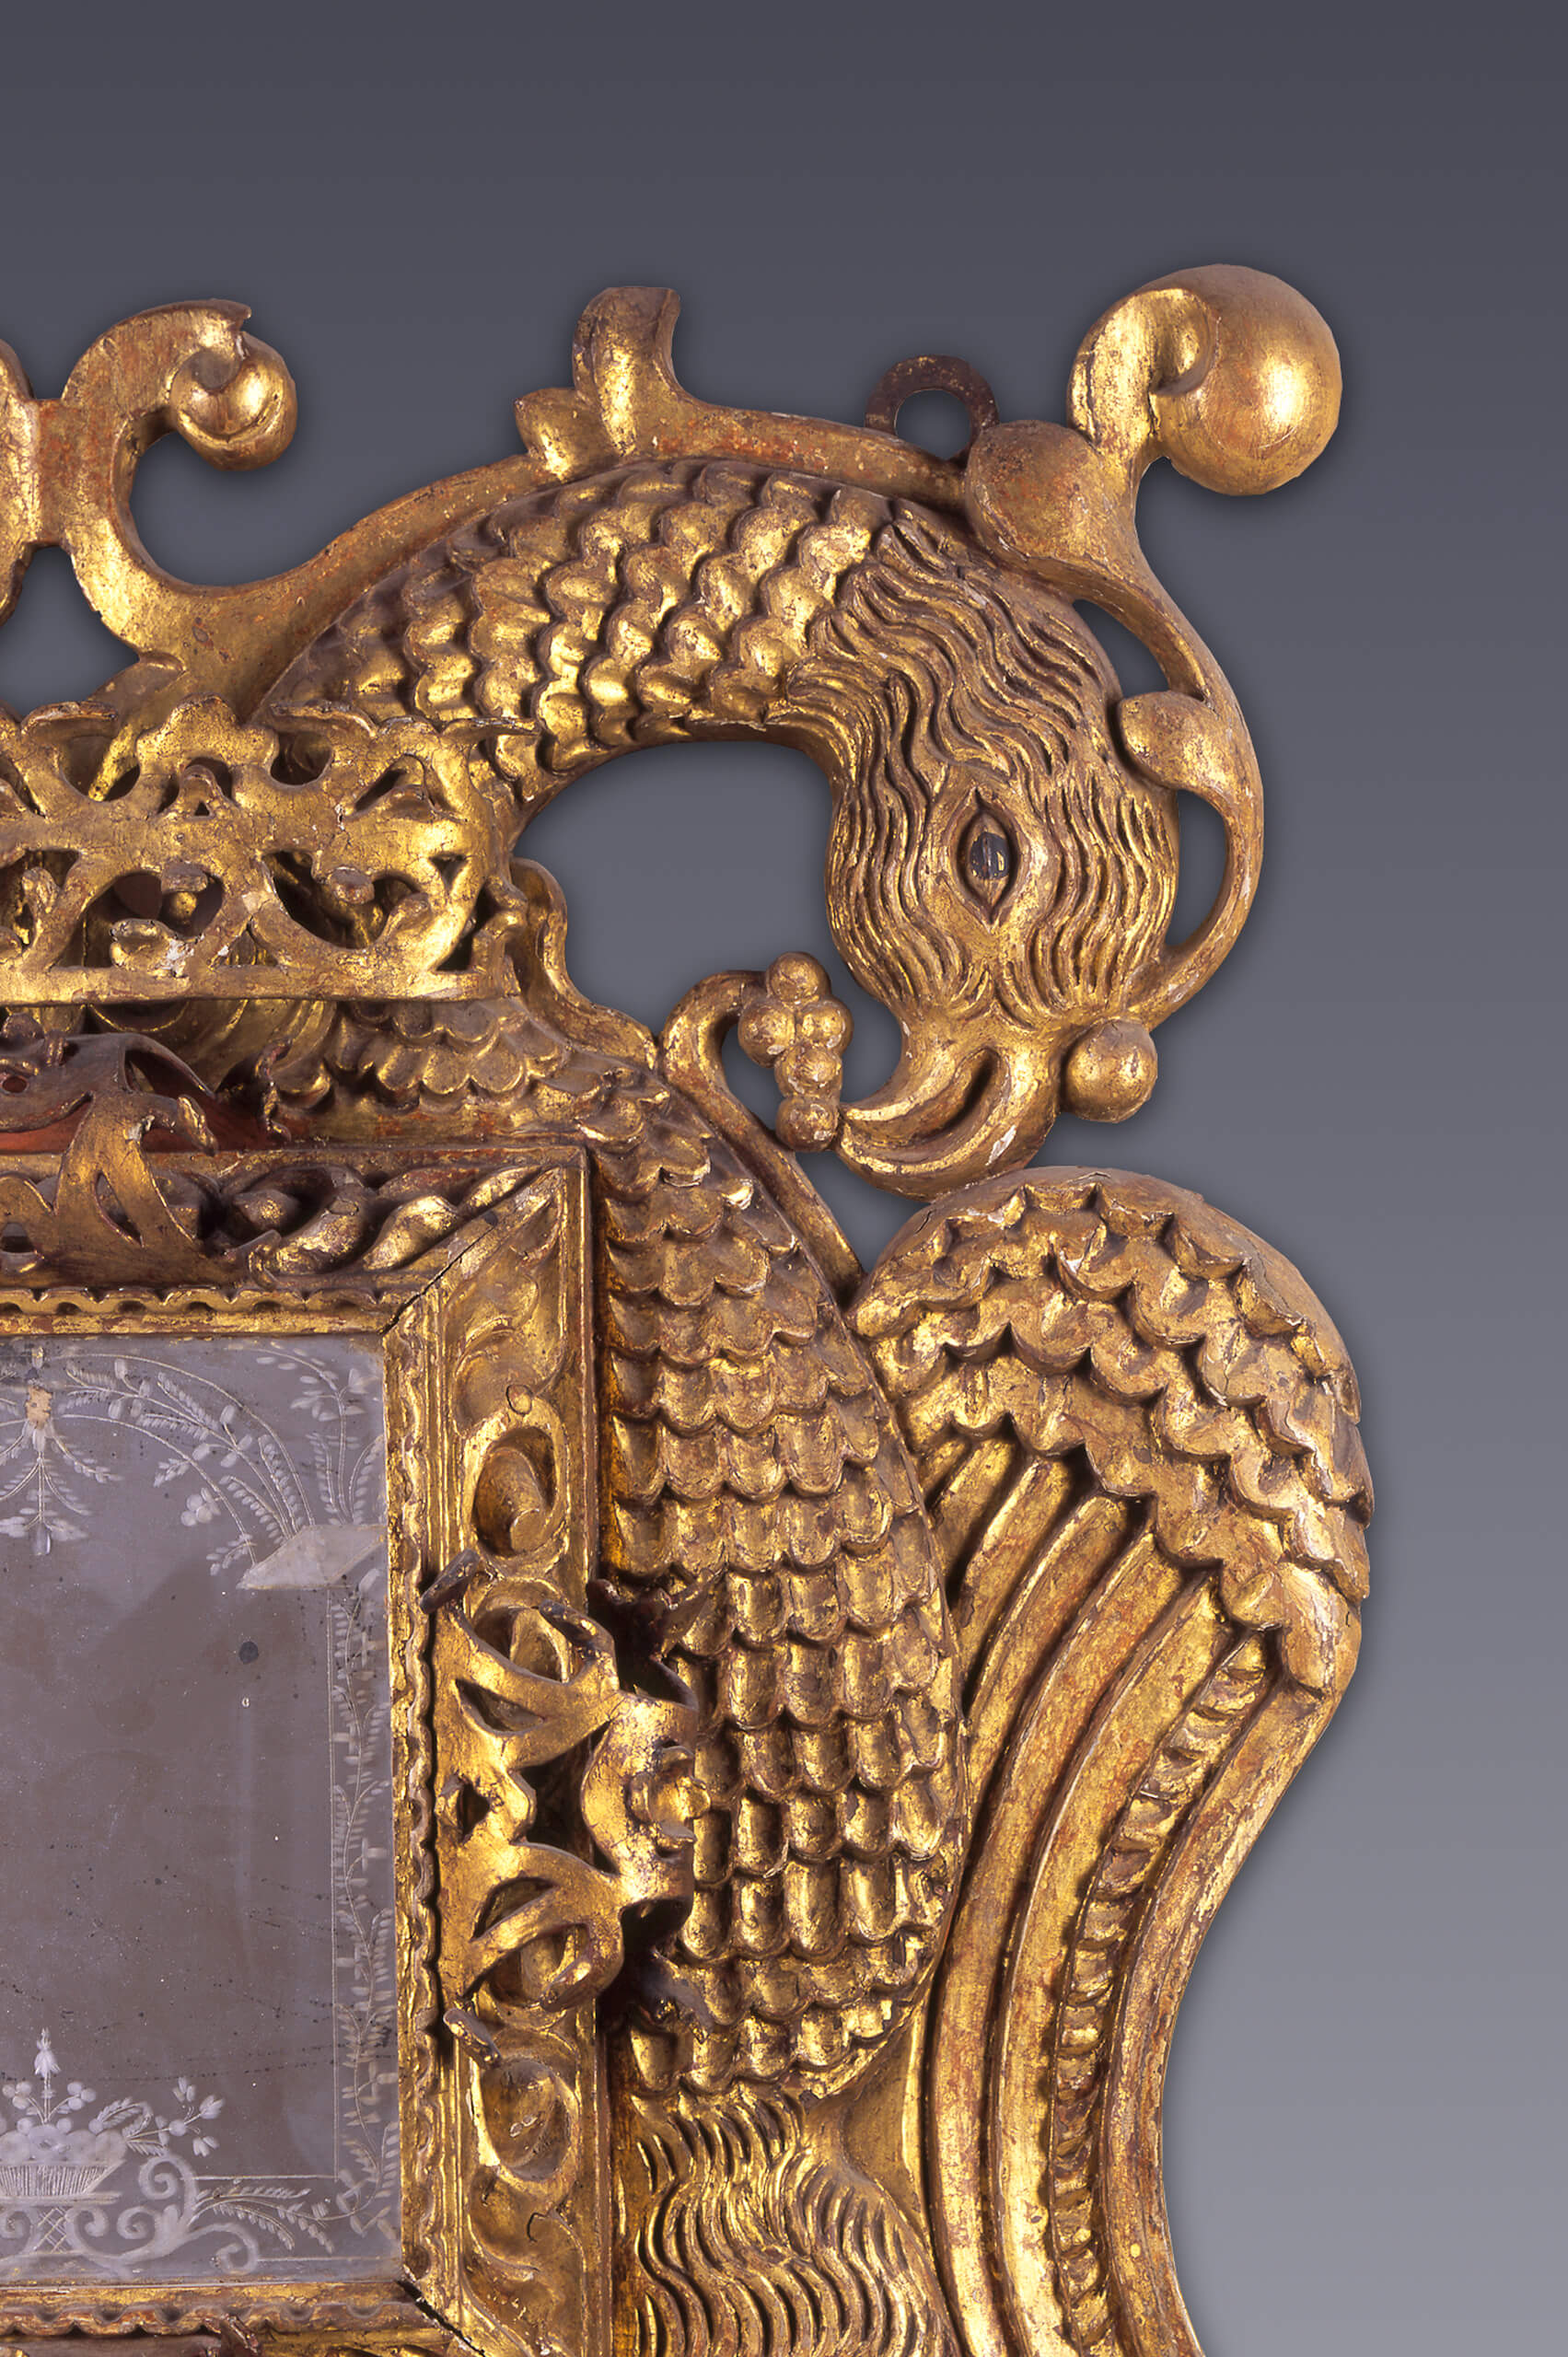 Par de espejos en forma de águilas bicéfalas | Salas de Arte Virreinal y Siglo XIX | Museo Amparo, Puebla